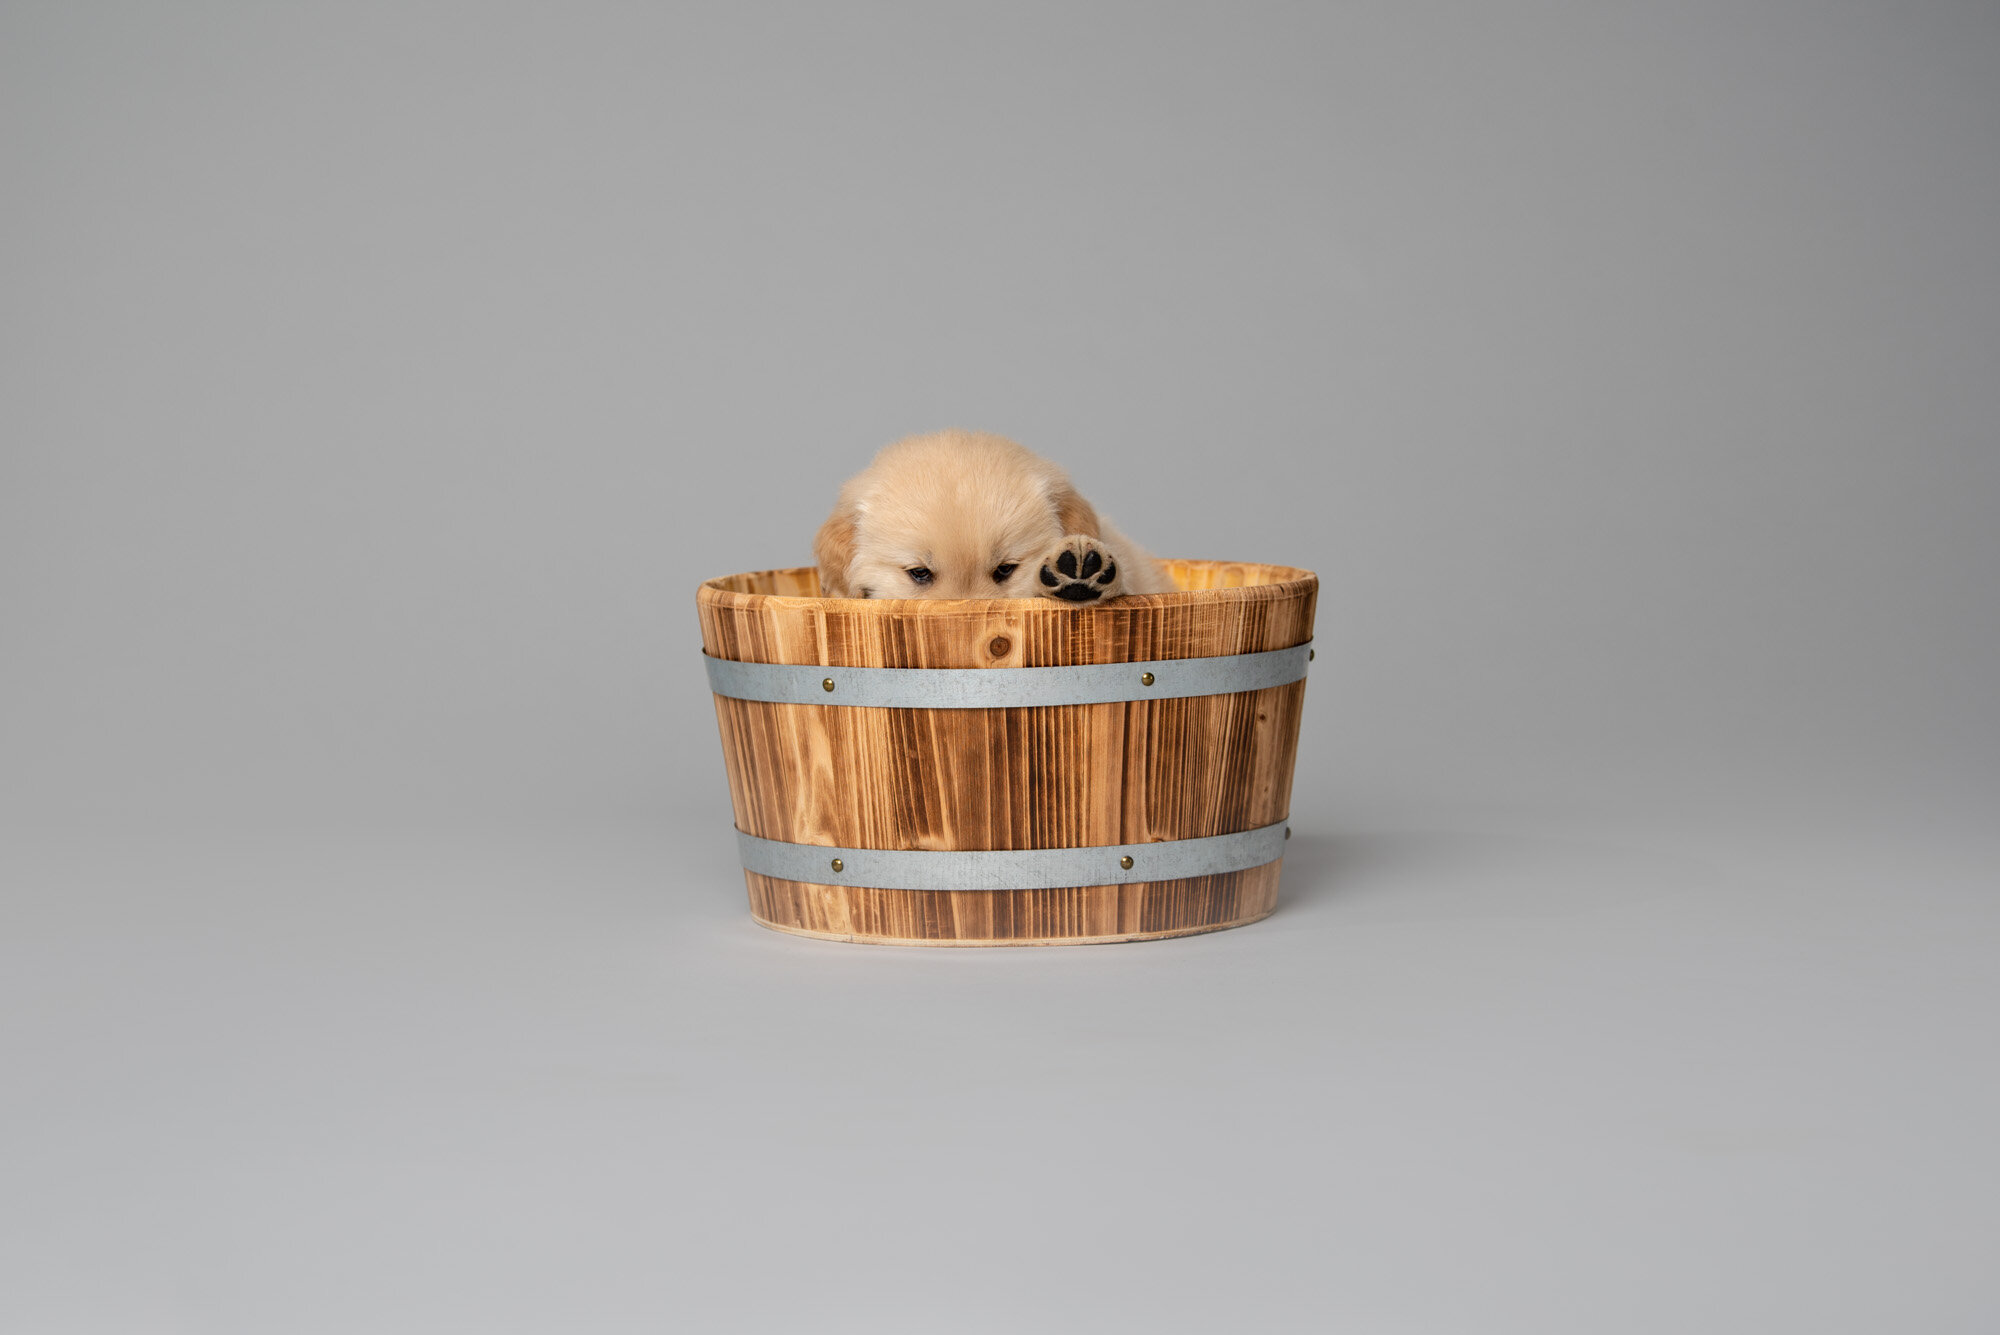 adorable golden retriever puppy in a bucket